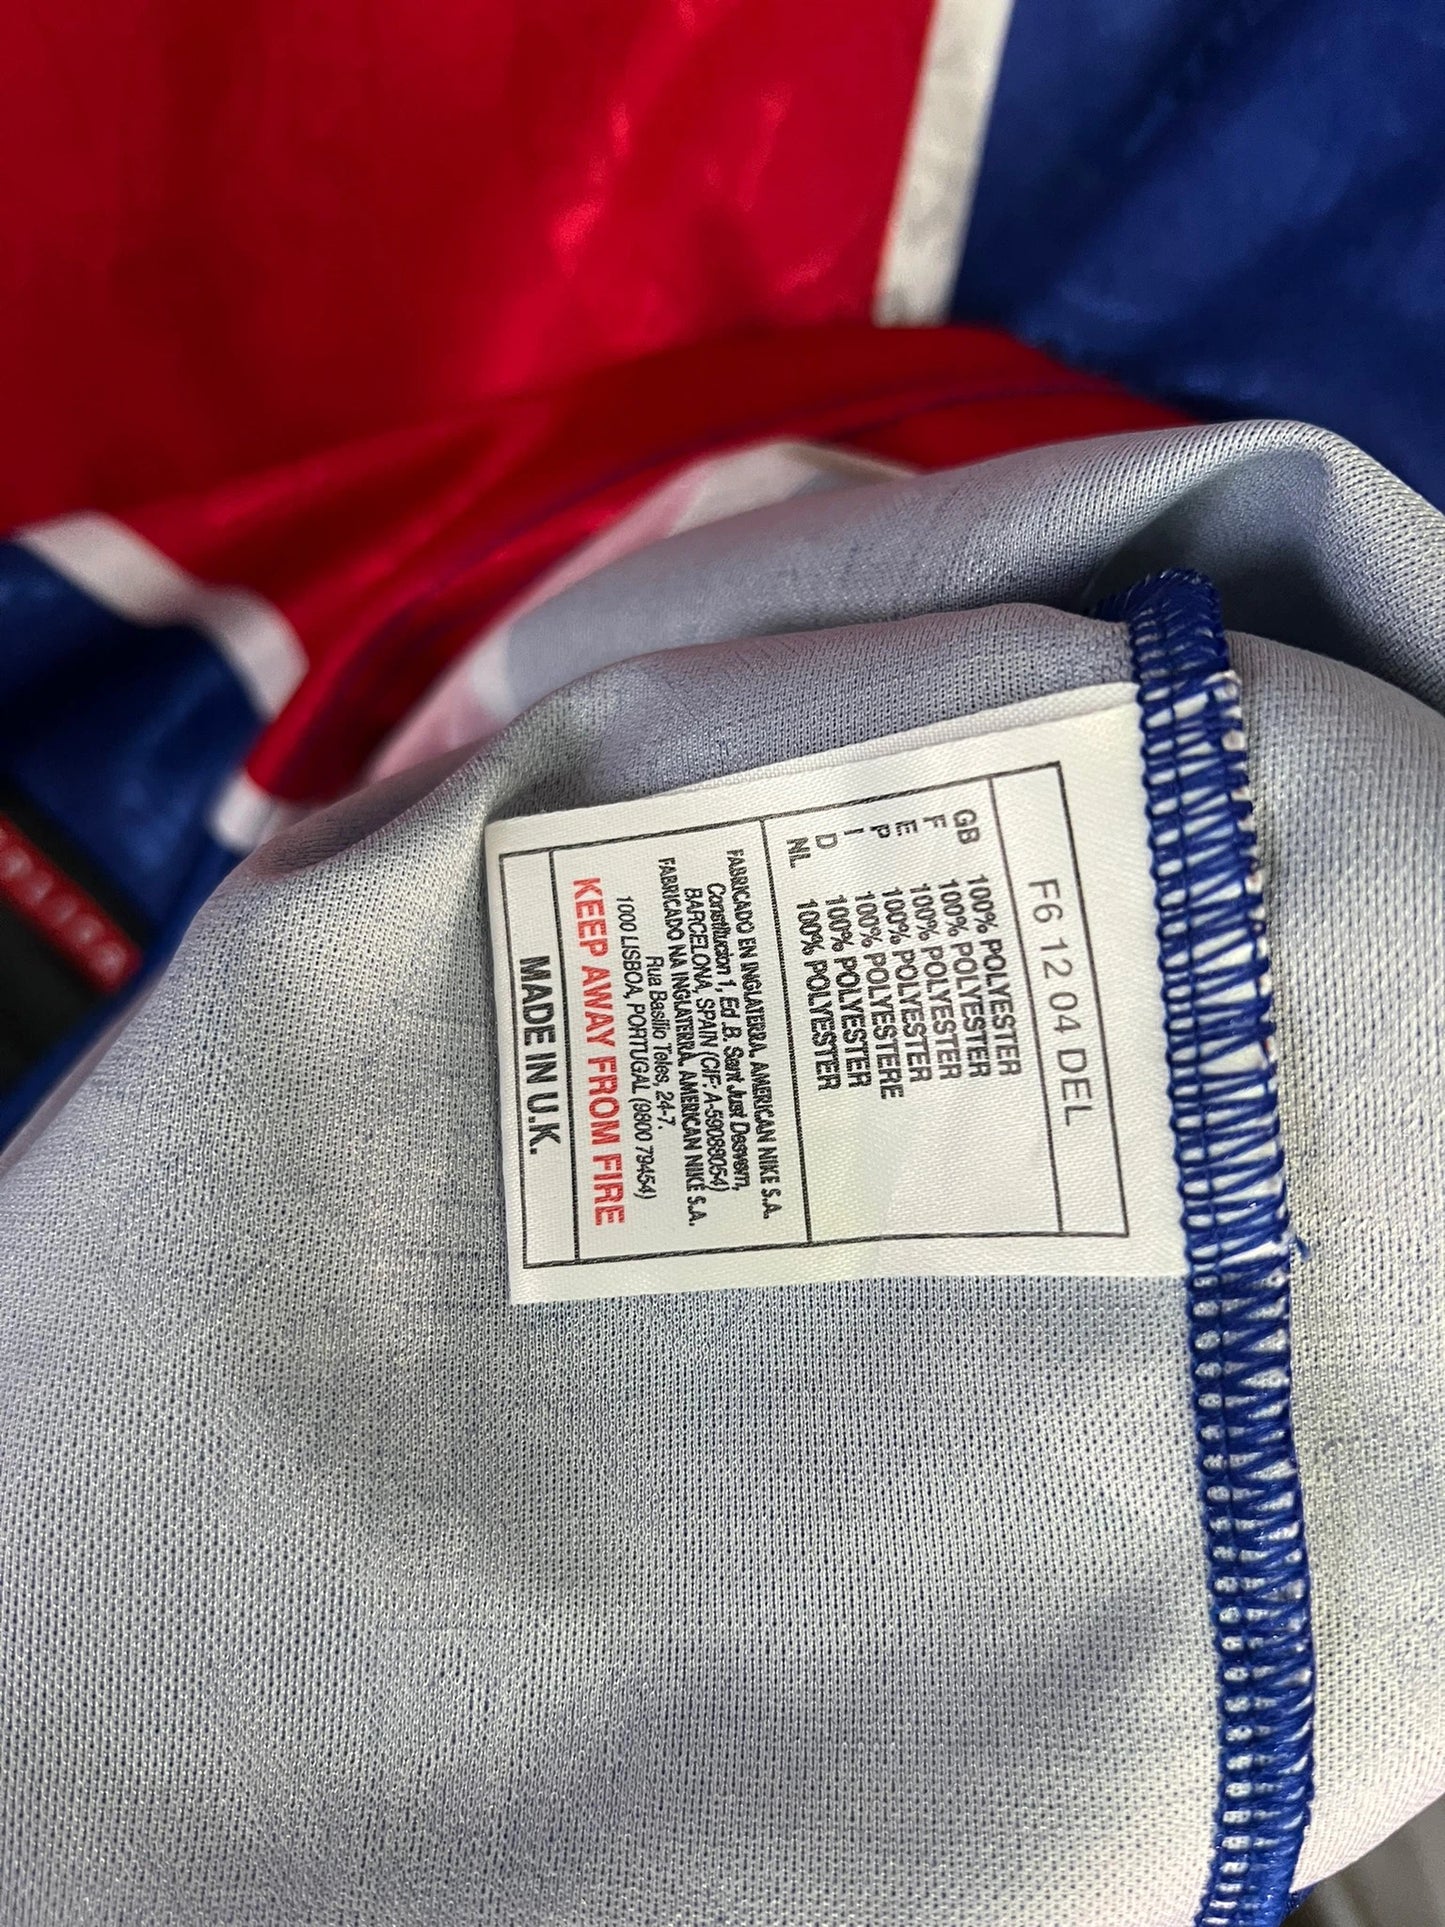 Maillot de foot vintage domicile du PSG de la saison 1996-1997. Il s'agit d'un maillot authentique. On peut retrouver l'équipementier nike et le sponsor opel. On peut voir l'étiquette d'authenticité comportant les numéros F6 12 04 DEL